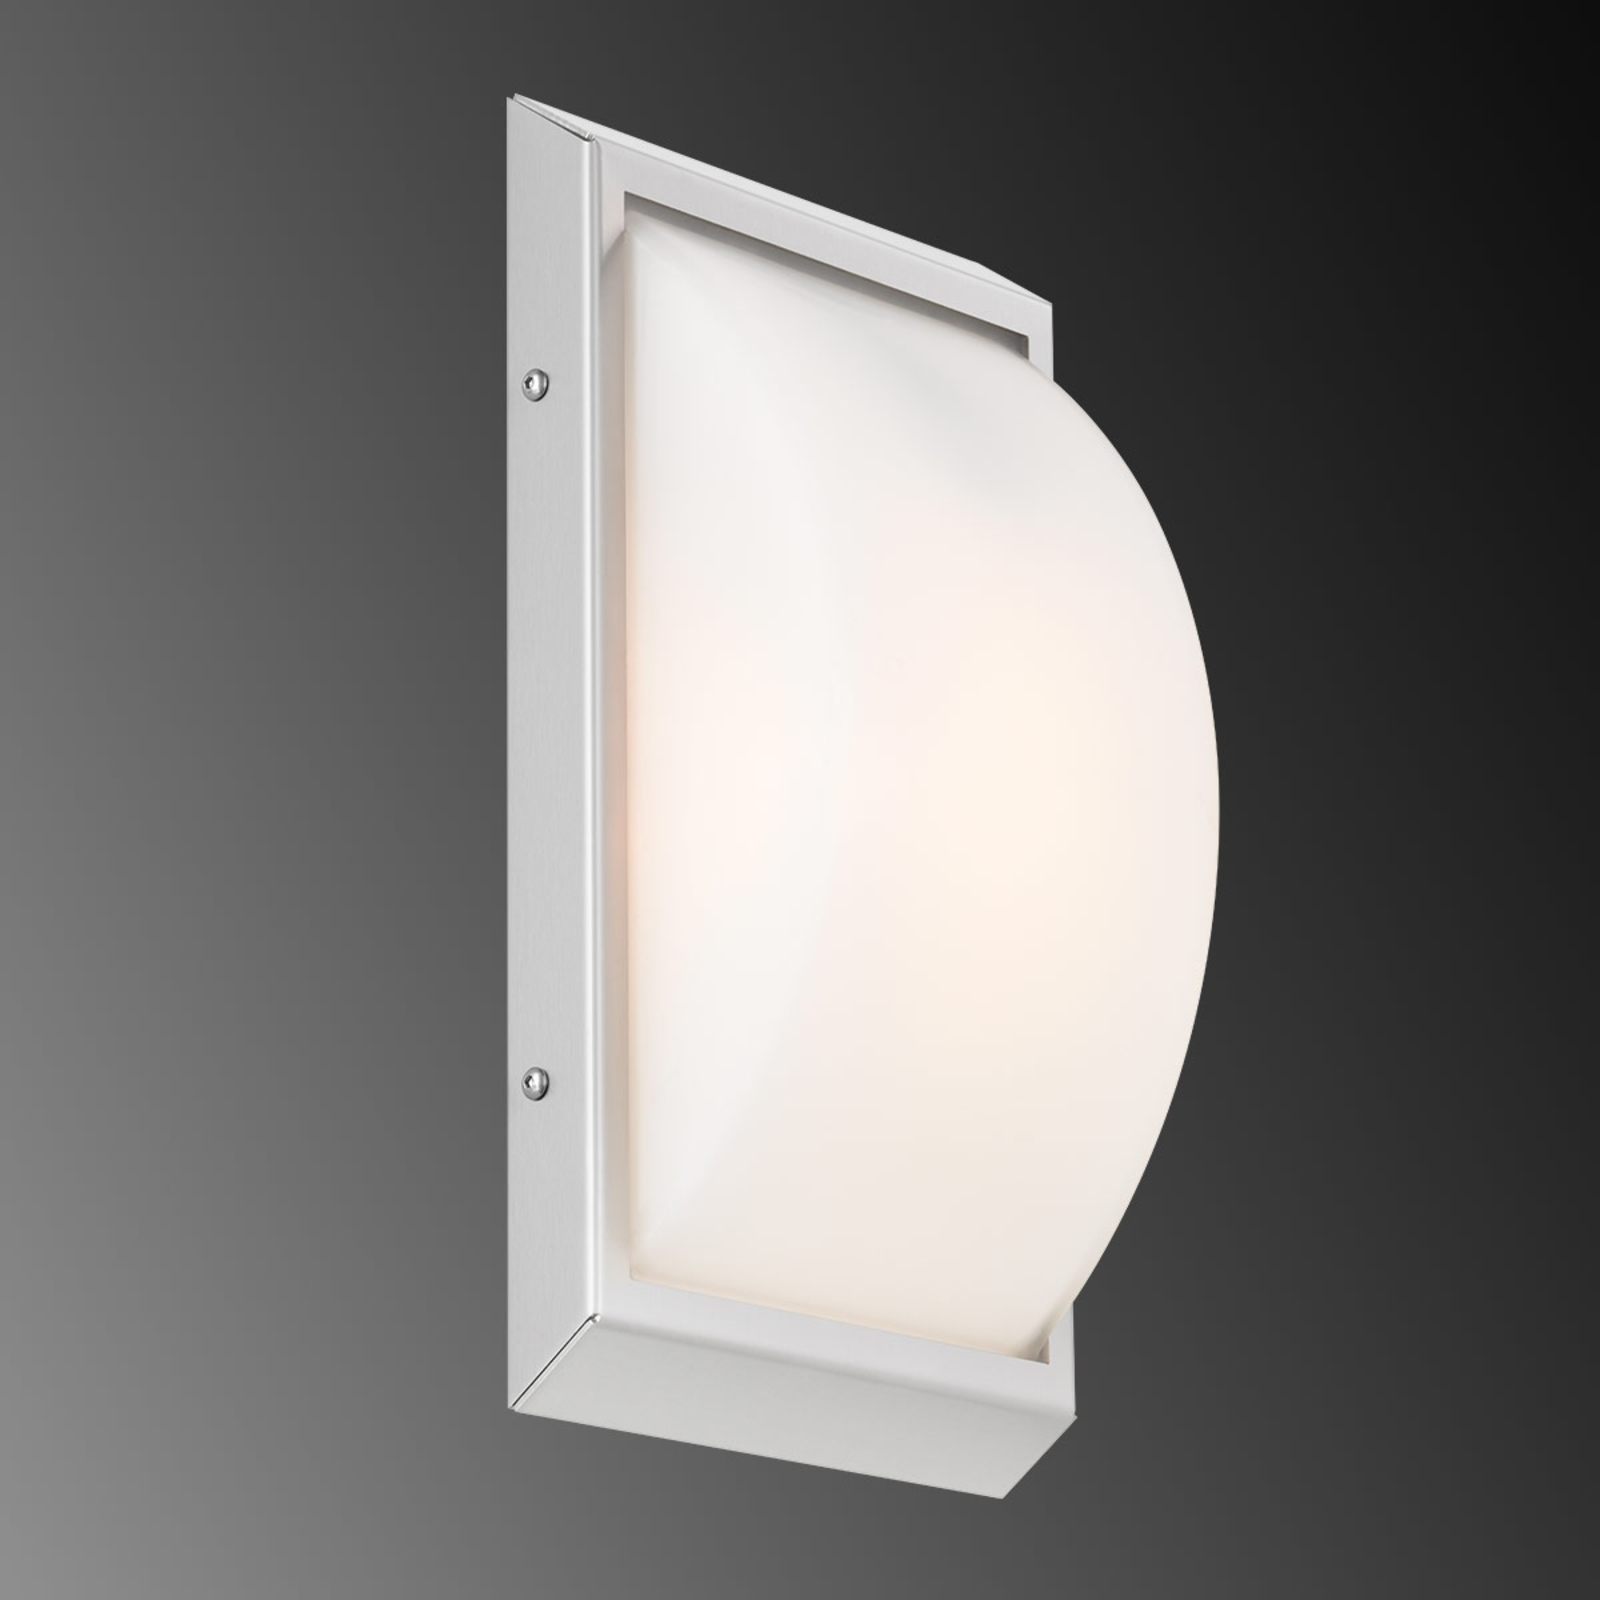 Venkovní nástěnné svítidlo LED 052, bílé